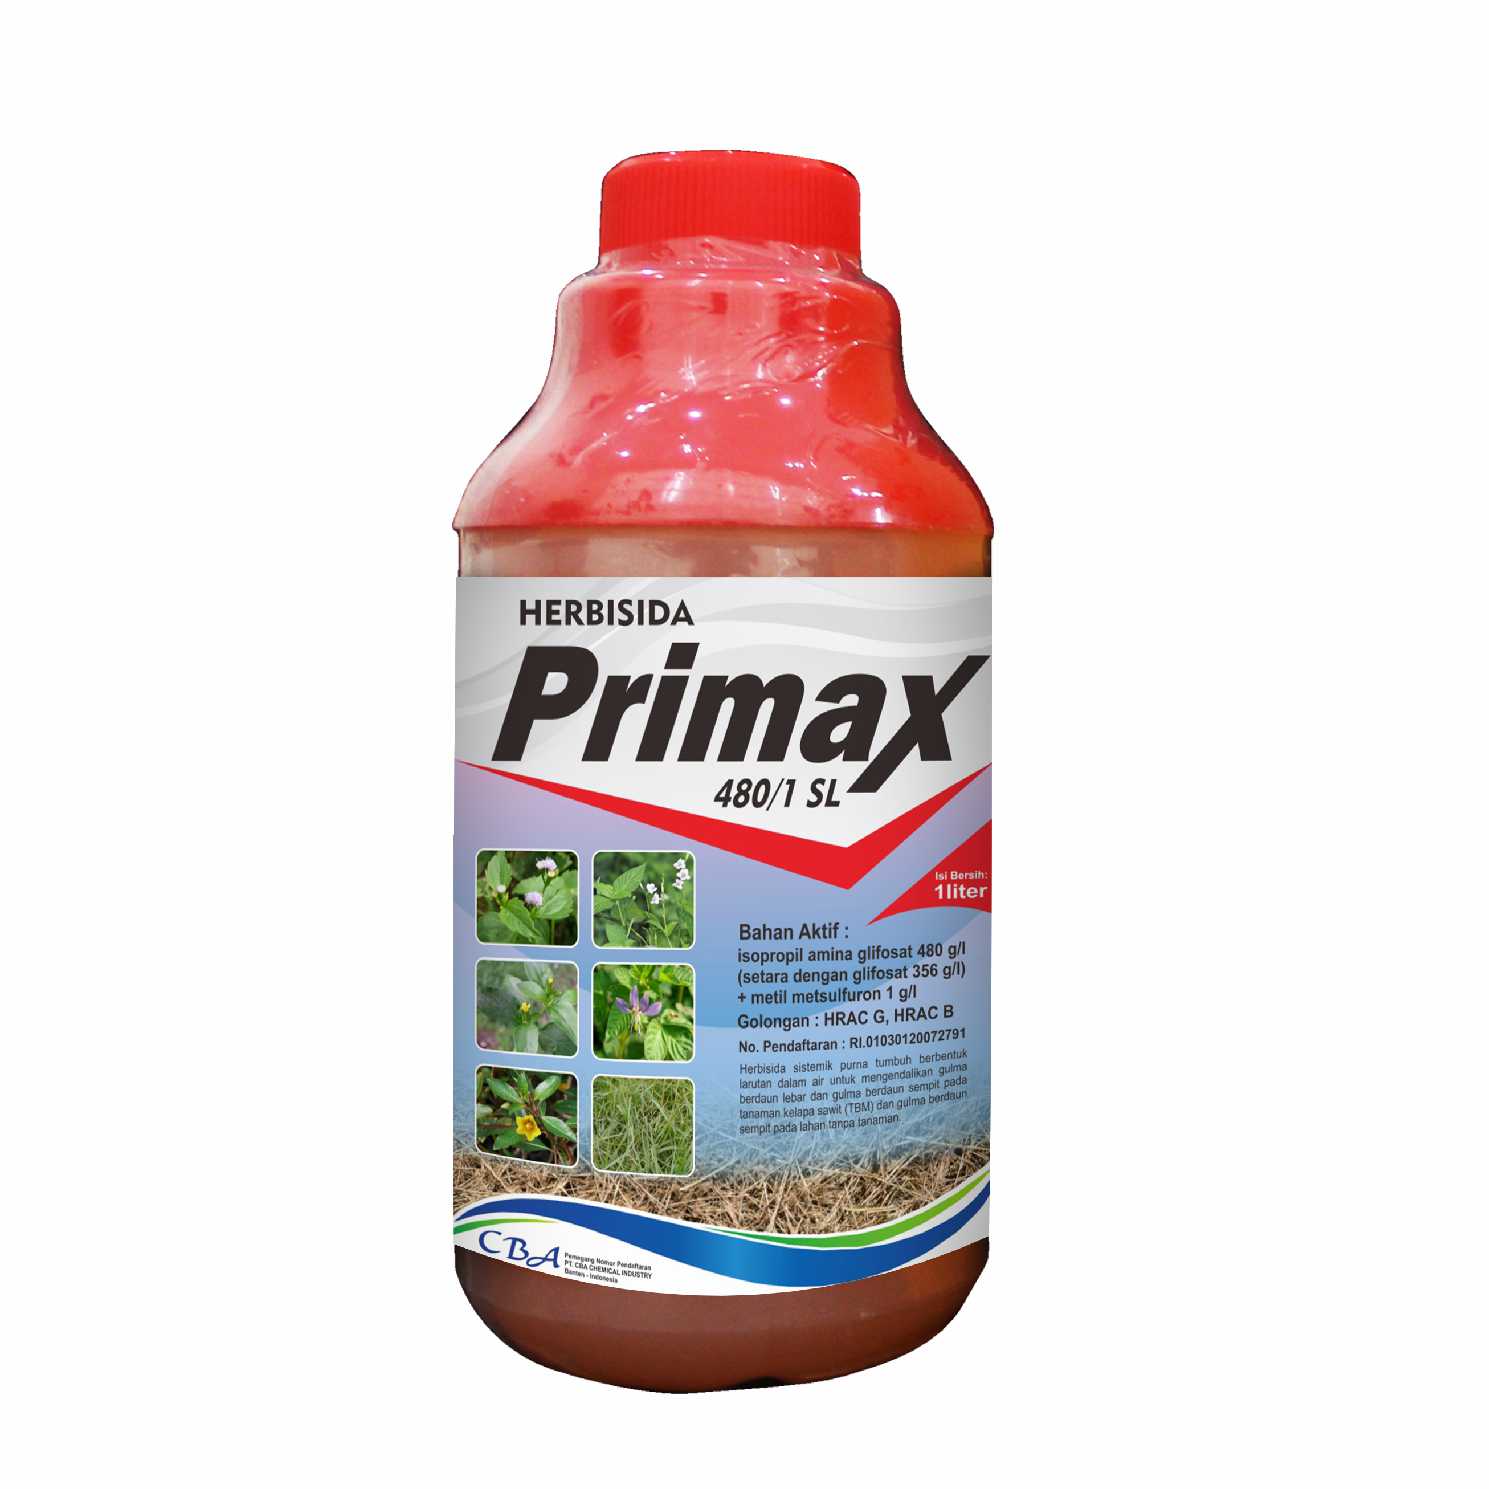 PRIMAX 480/1 SL